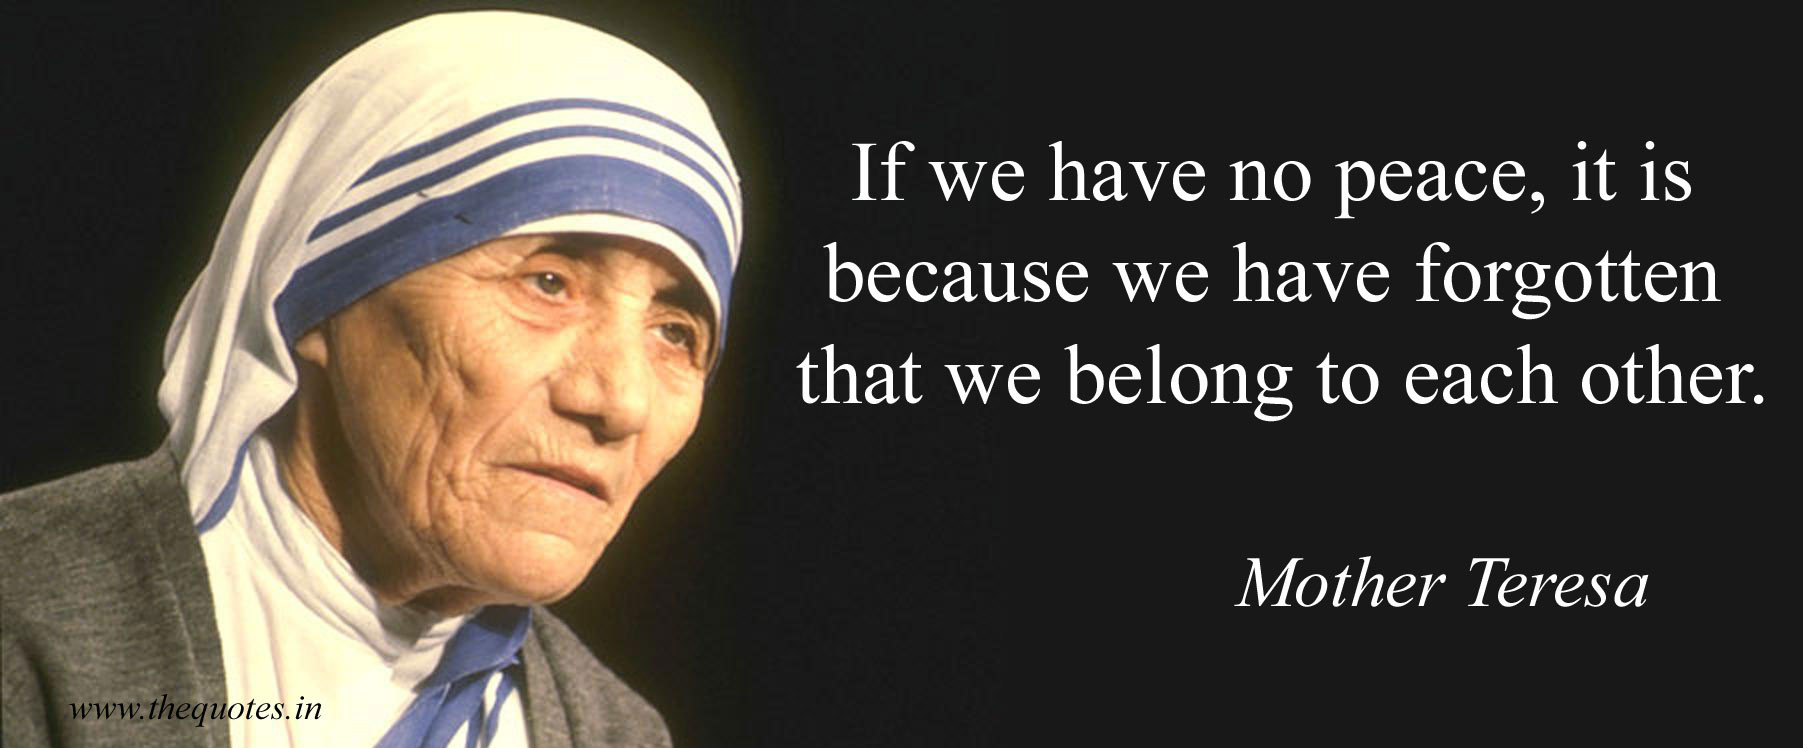 Mother Teresa Peace Quote
 mother teresa pecae